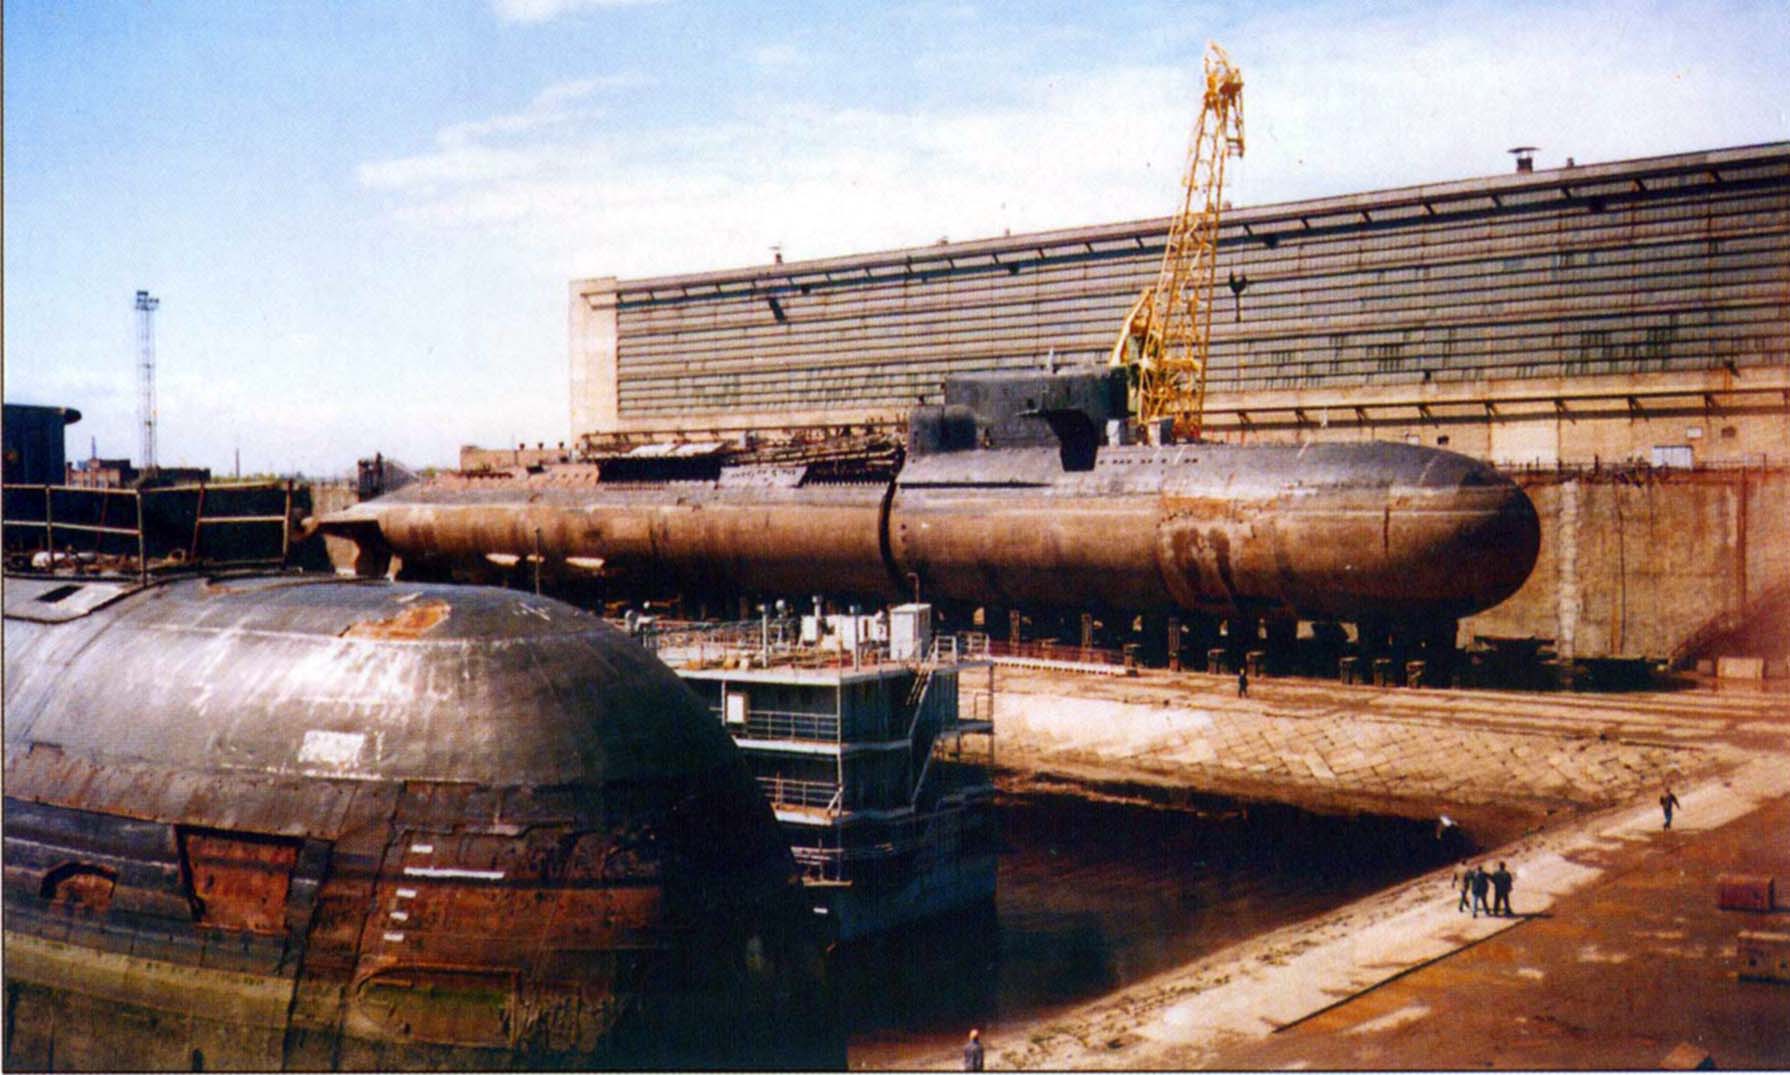 Пл материал. Подводная лодка БС 64 Подмосковье. Подводные лодки проекта 949а «Антей». АПЛ БС-64 «Подмосковье». БС-64 атомная подводная лодка.